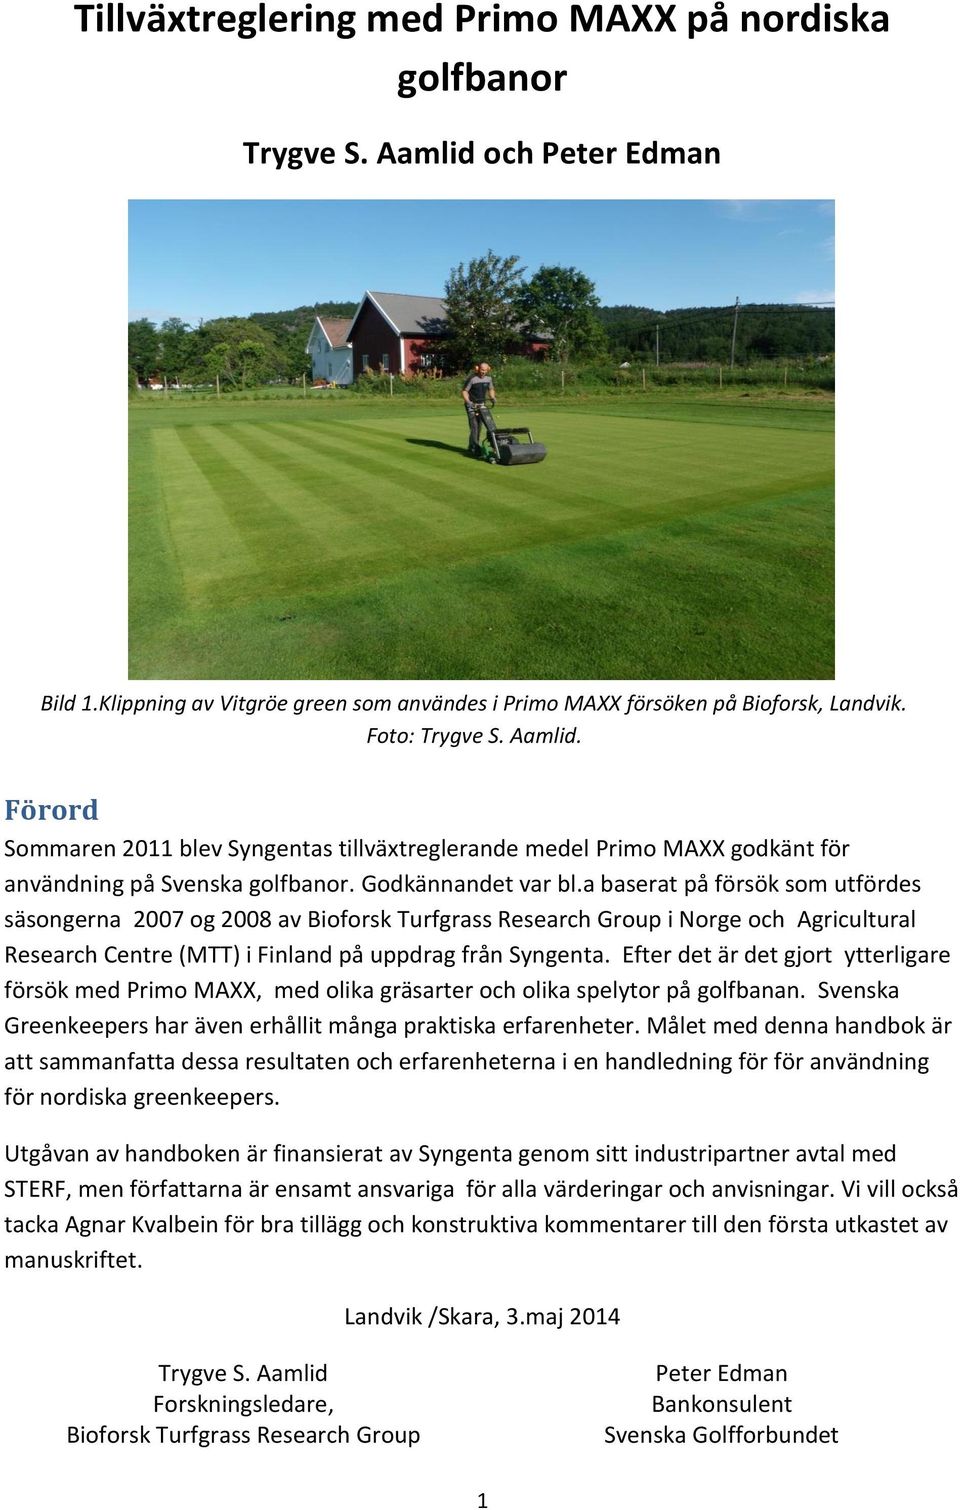 a baserat på försök som utfördes säsongerna 2007 og 2008 av Bioforsk Turfgrass Research Group i Norge och Agricultural Research Centre (MTT) i Finland på uppdrag från Syngenta.